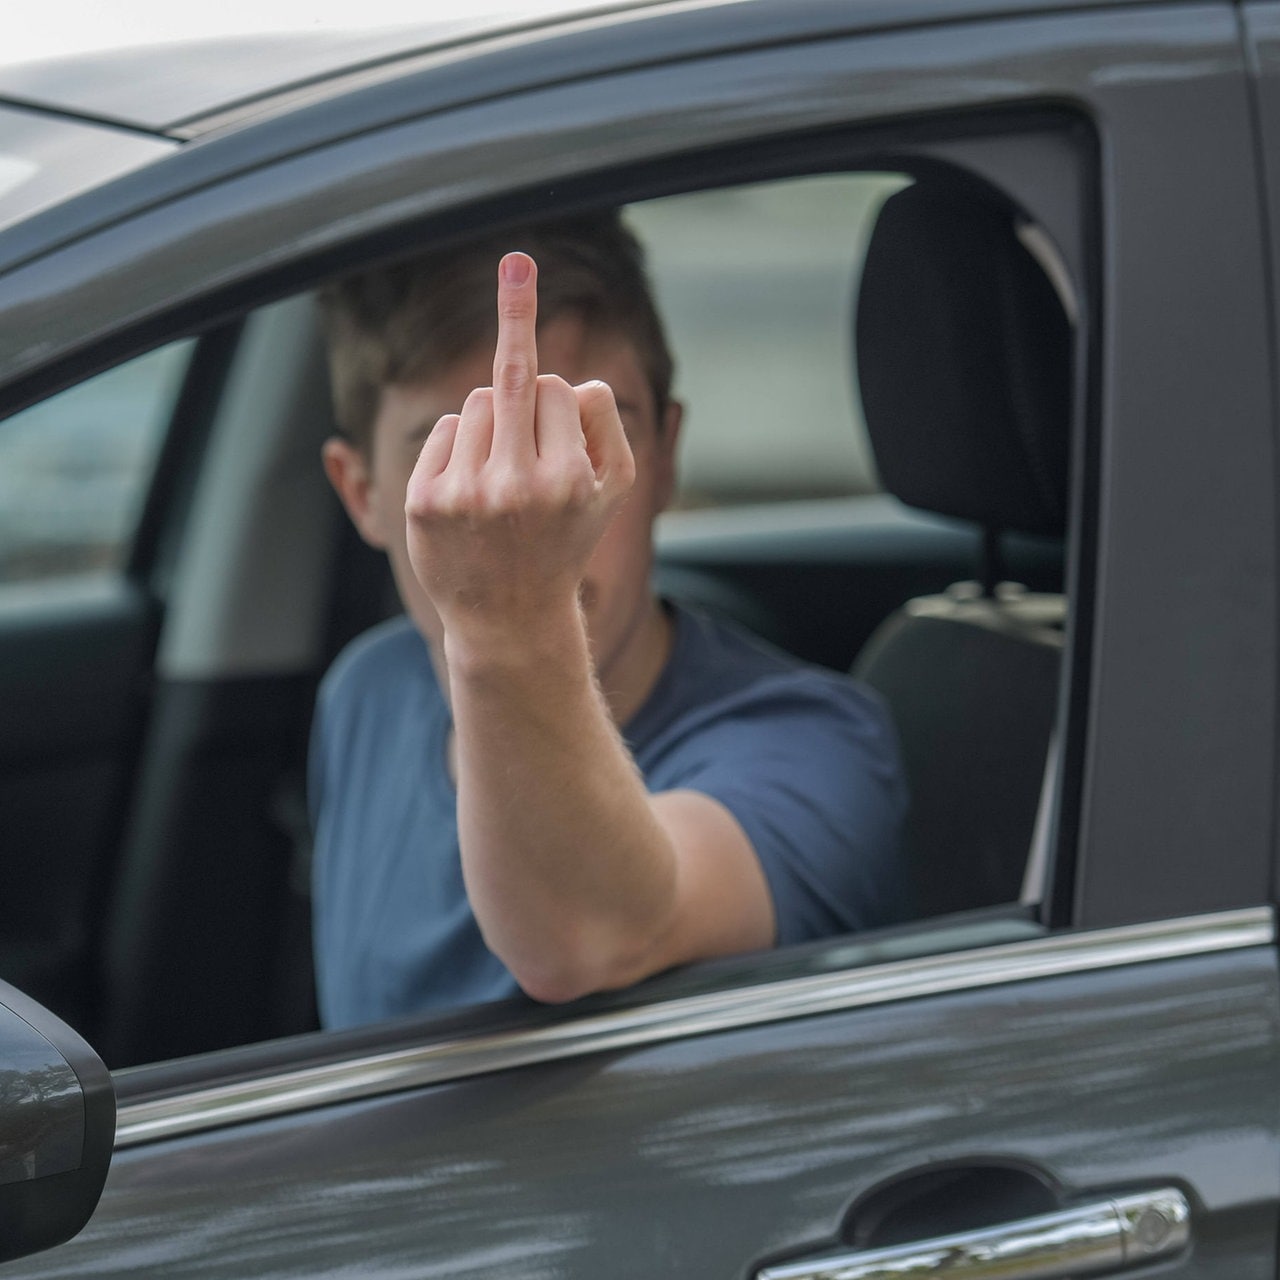 Bußgeld für Autofahrer: So teuer kann eine Beleidigung werden